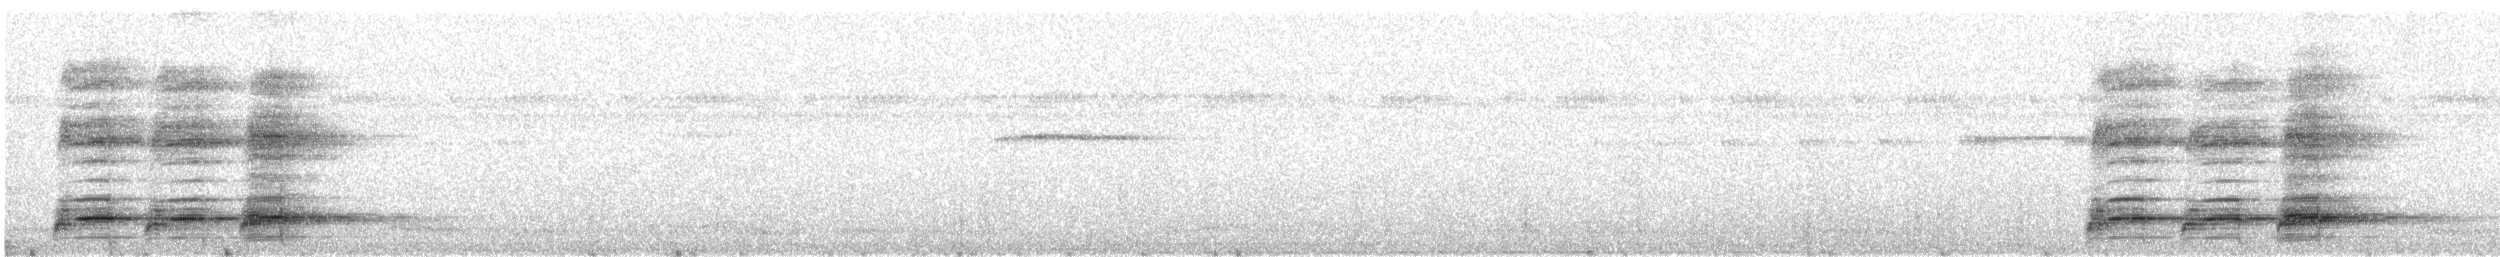 Ak Karınlı Saksağan - ML442597611